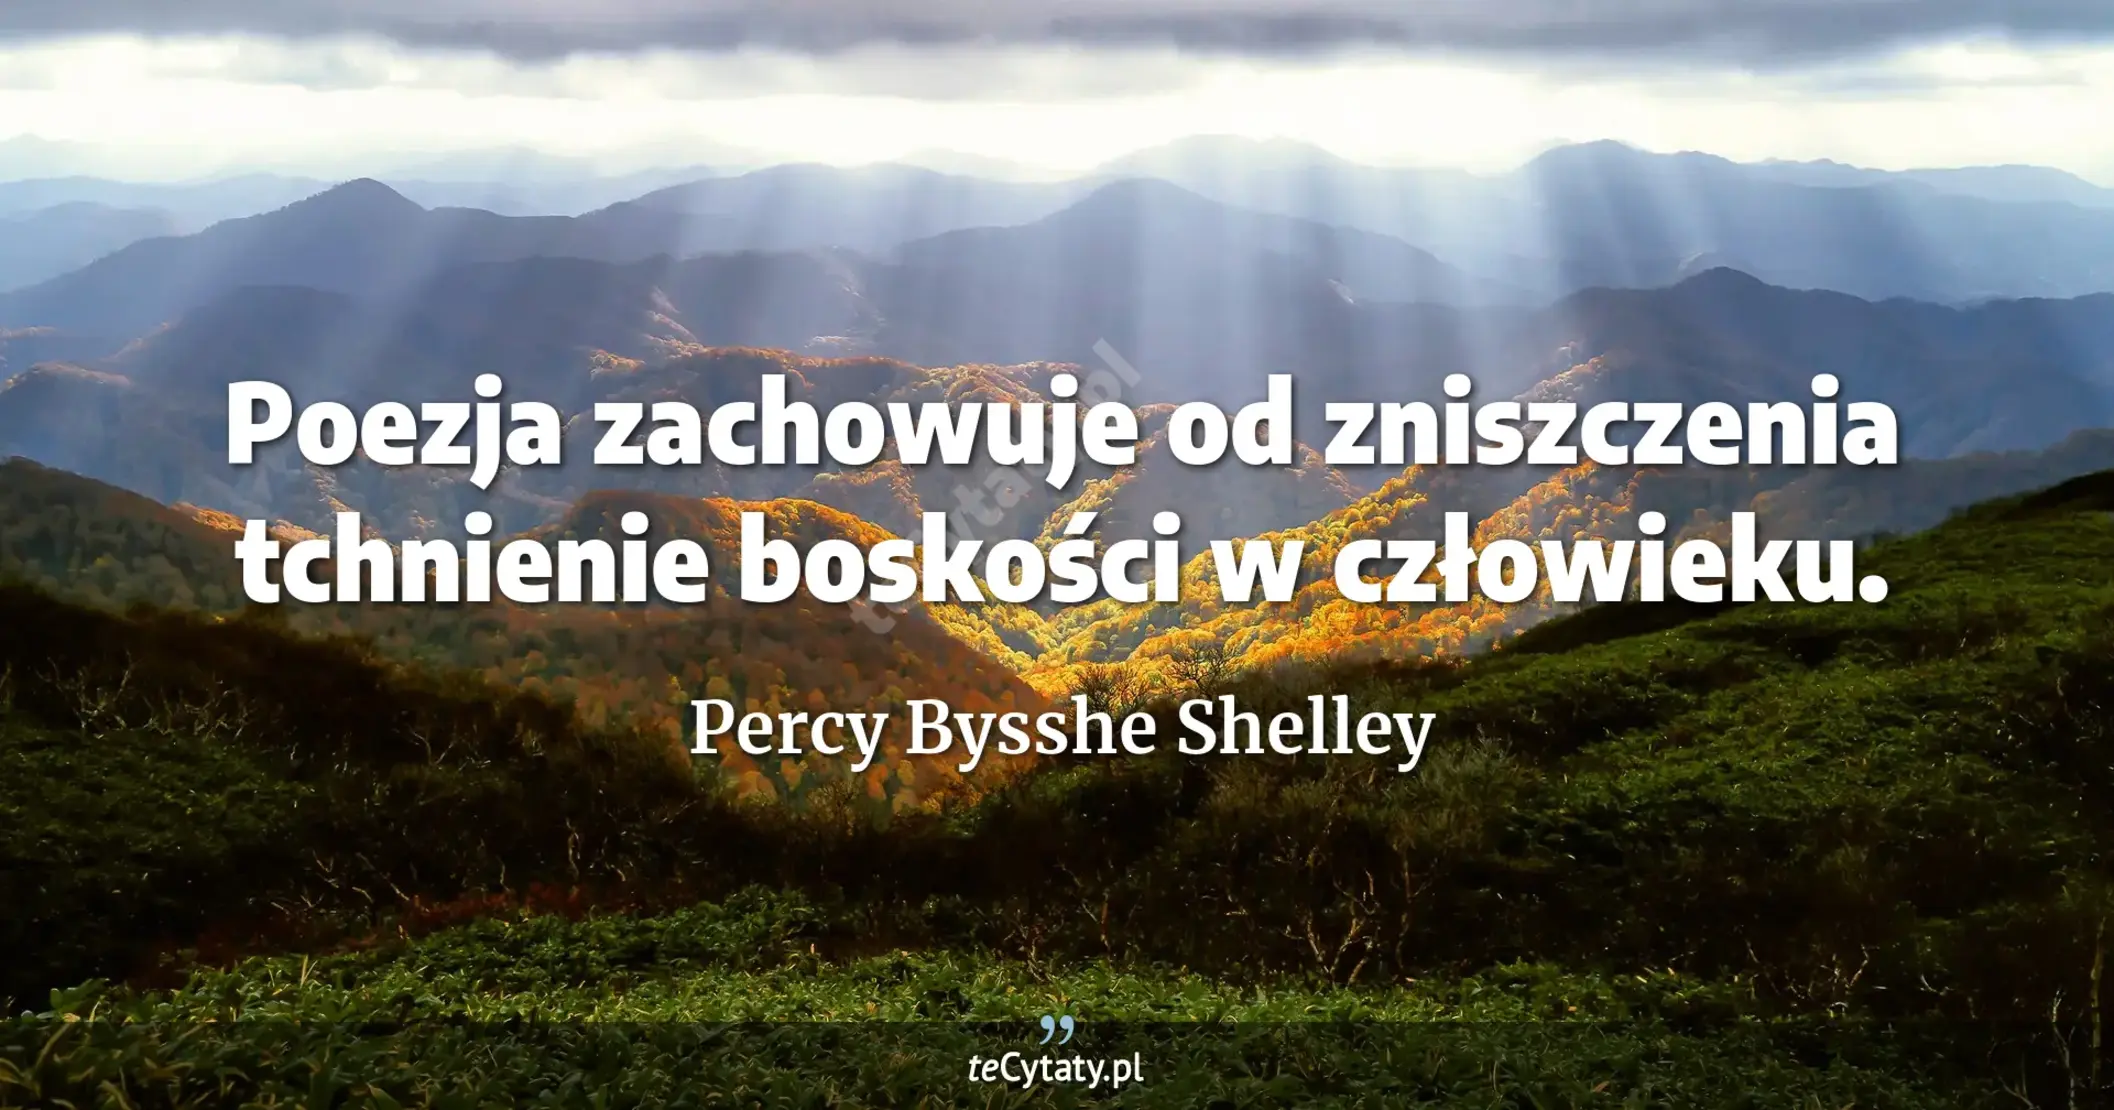 Poezja zachowuje od zniszczenia tchnienie boskości w człowieku. - Percy Bysshe Shelley